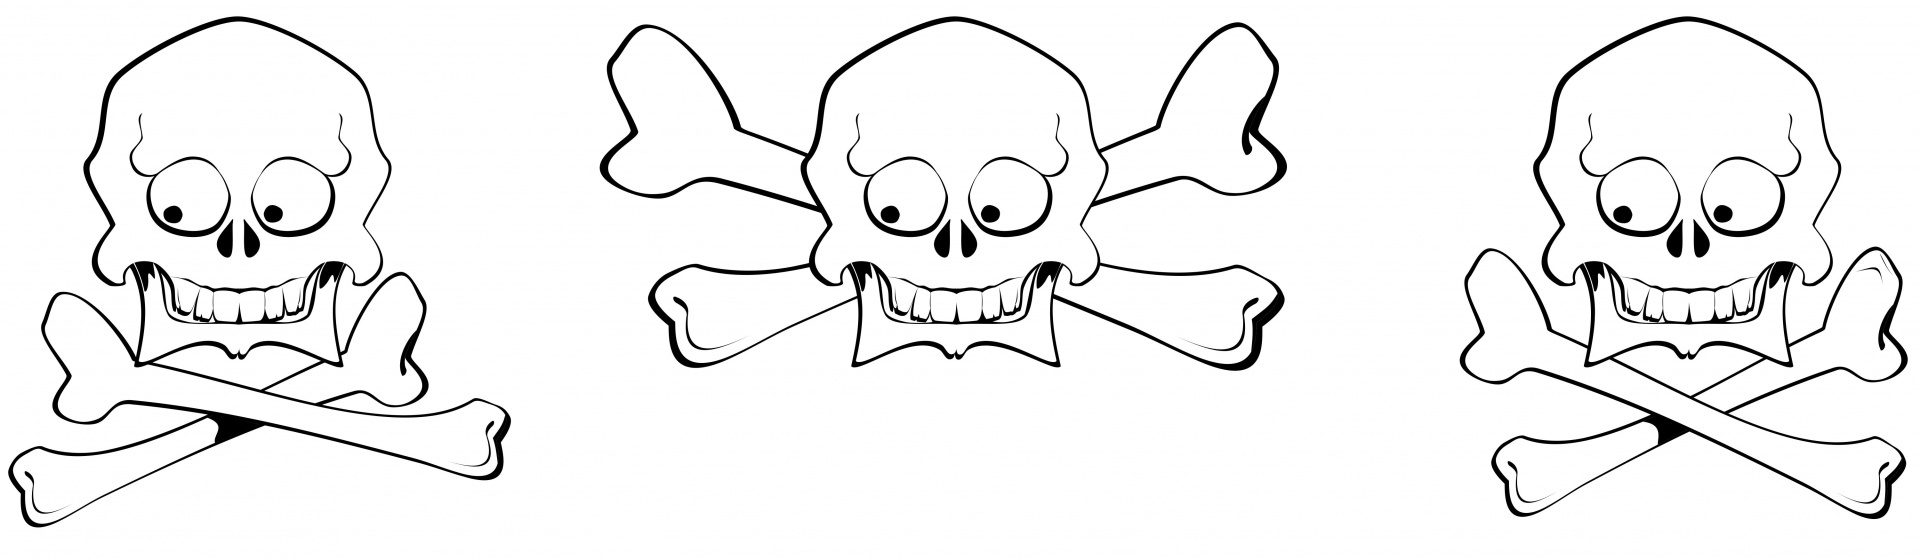 Happy skull and crossbones illustrations